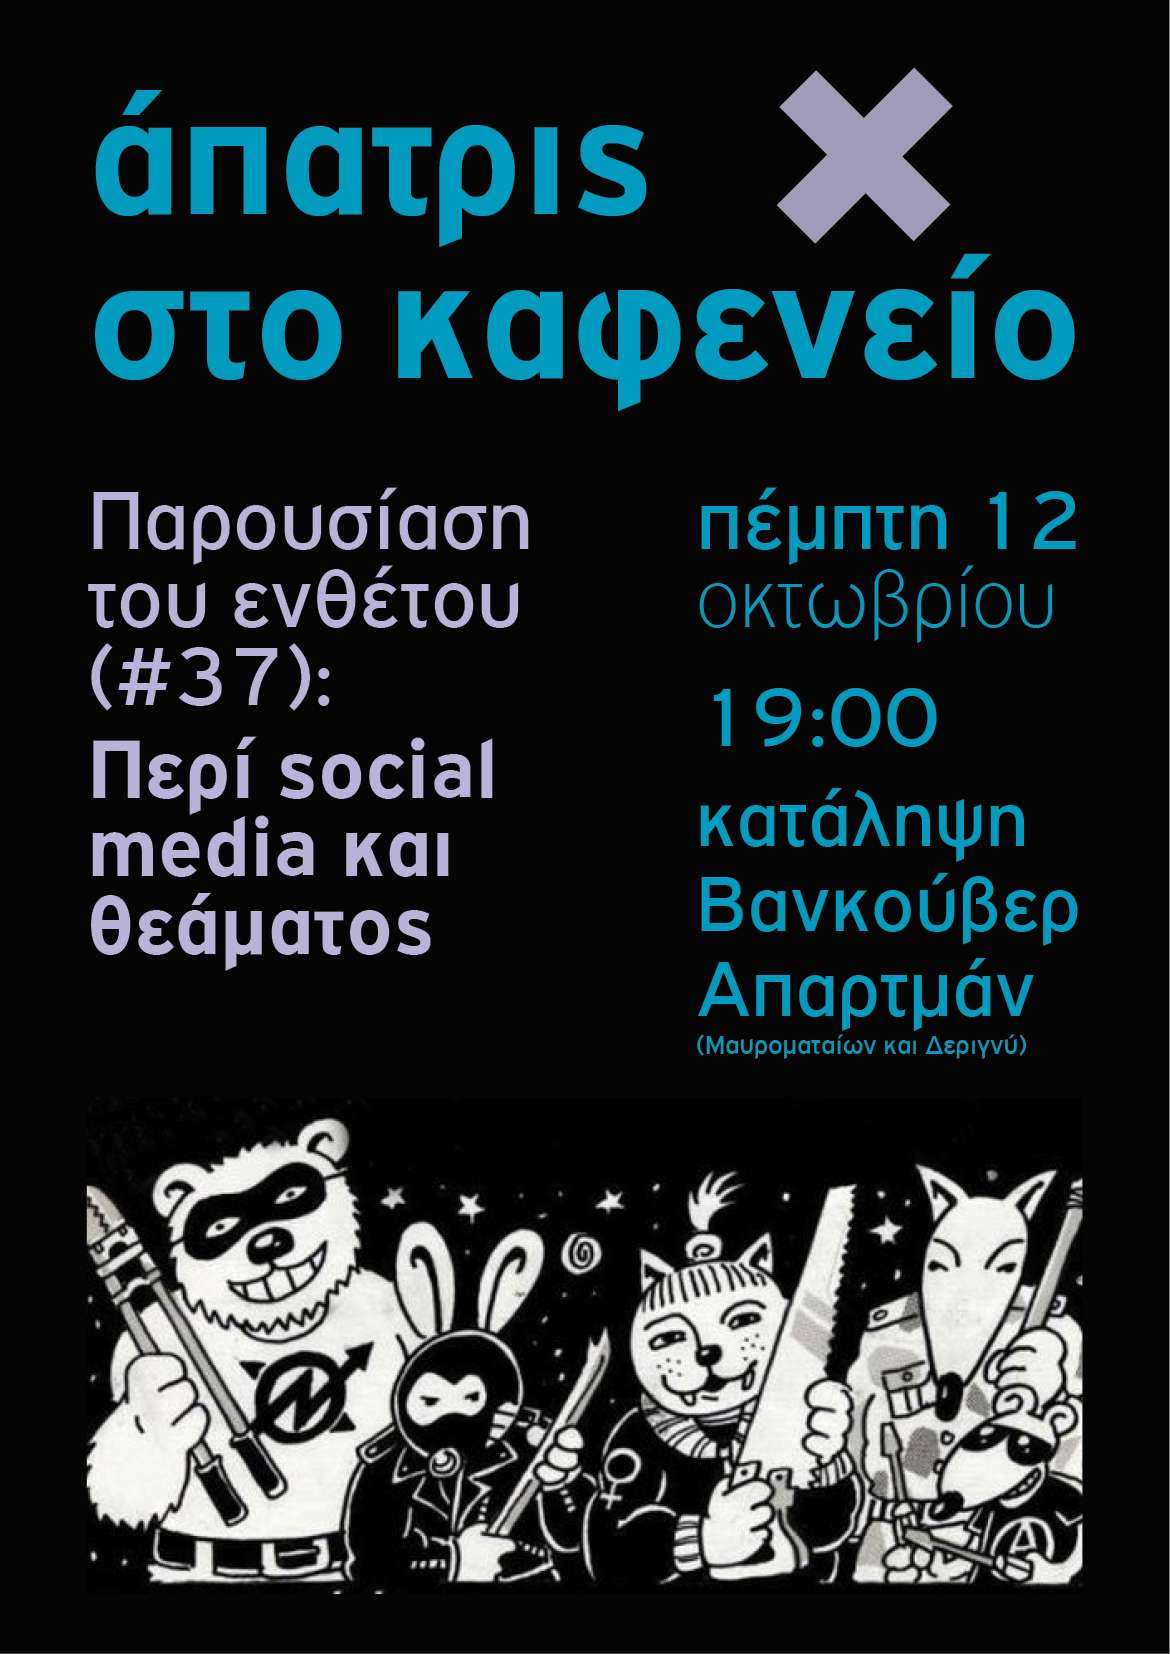 Αθήνα: Άπατρις στο καφενείο. Περι social media και θεάματος + μπαρ οικονομικής ενίσχυσης